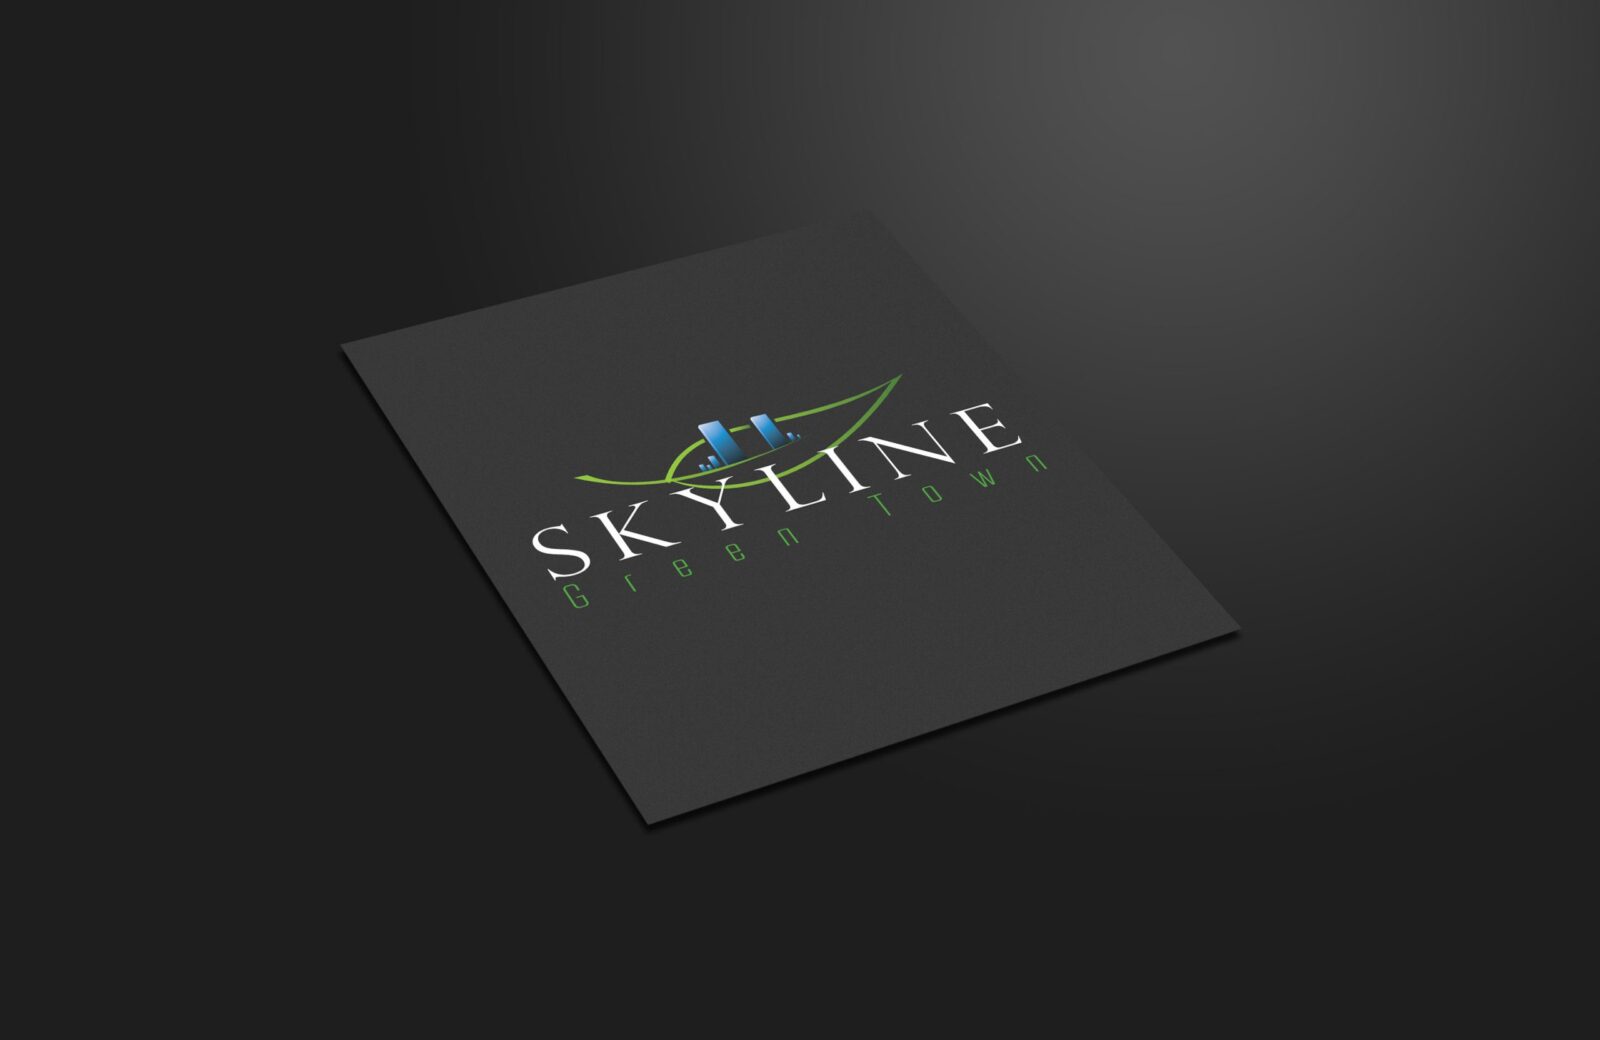 Skyline Green Town konut projesine ait logo tasarımı